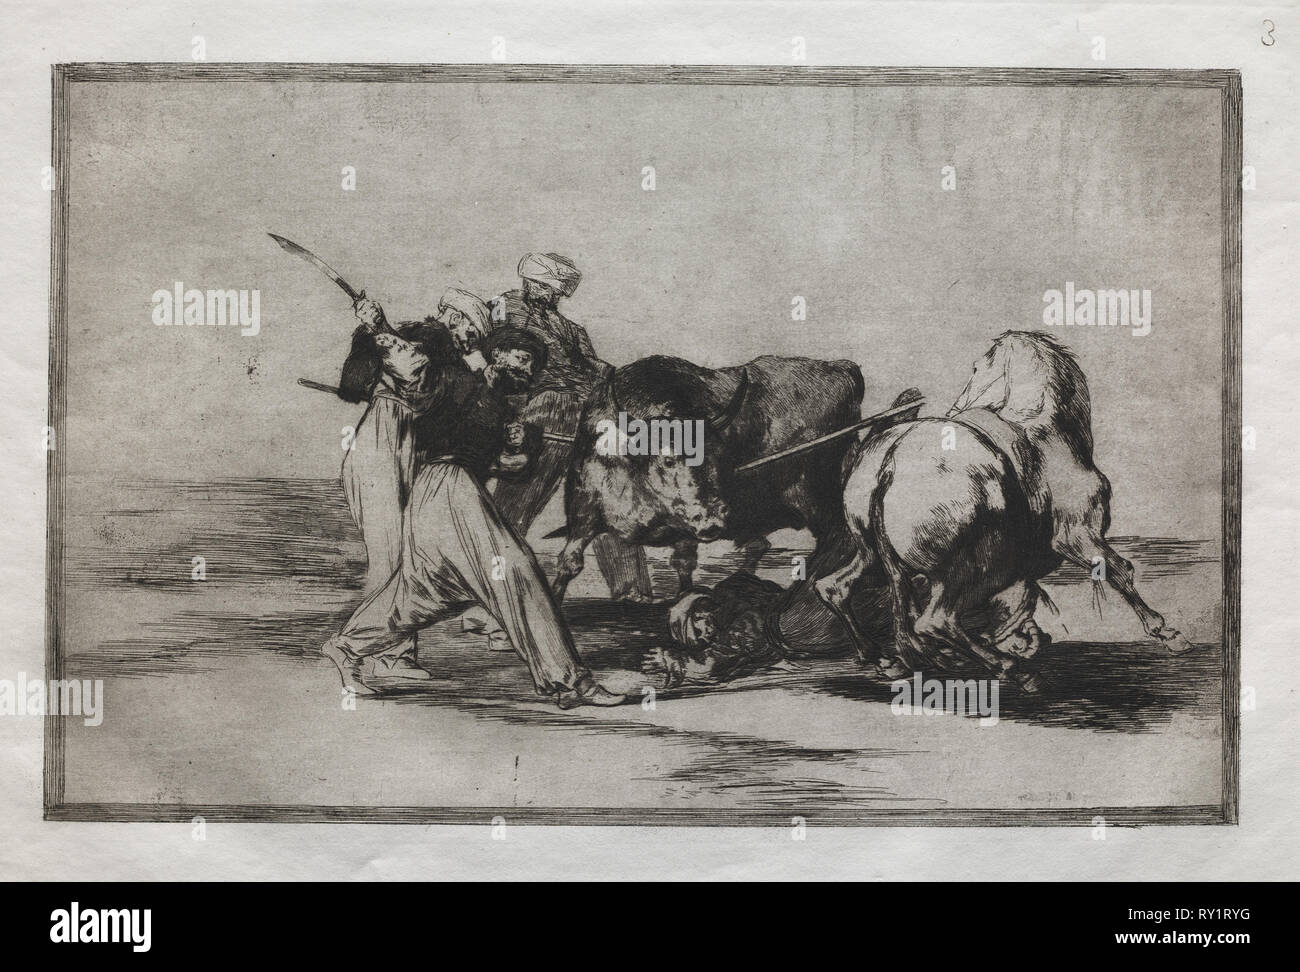 Stierkämpfe: die Mauren in Spanien, auf den Aberglauben der Koran, hat diese Kunst der Jagd, und Speer ein Stier in die Offene, 1876. Francisco de Goya (Spanisch, 1746-1828). Gravur Stockfoto